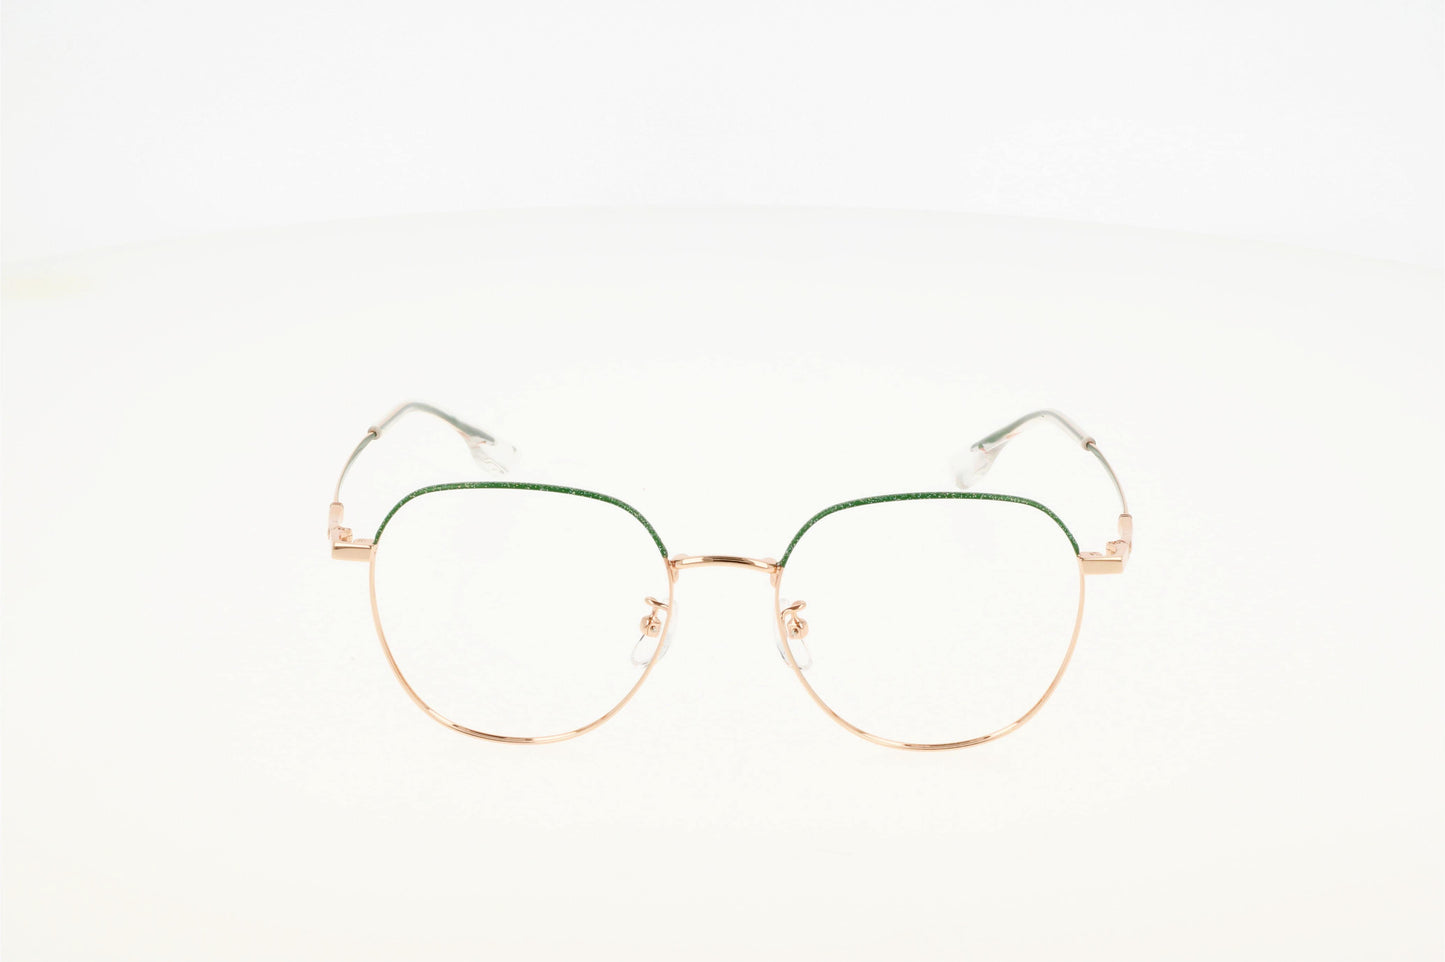 Originel eyewear France vous propose le modèle AYOUS, lunette de vue de couleur or et verte en métal, légère, moderne et tendance.